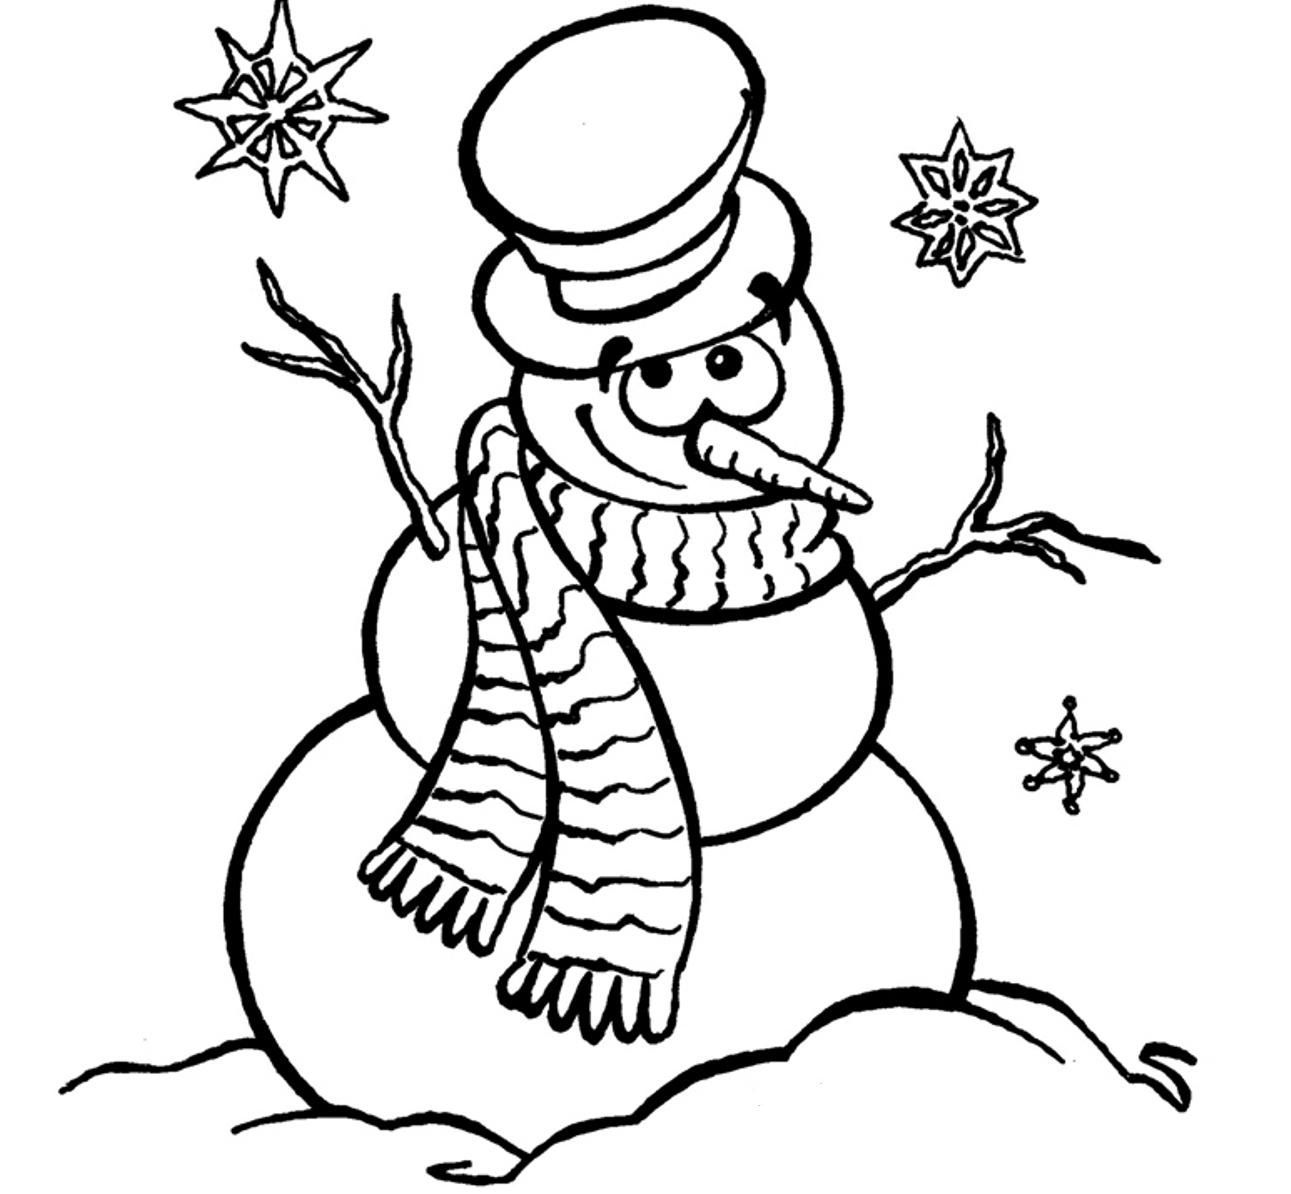 Snowman Line Art